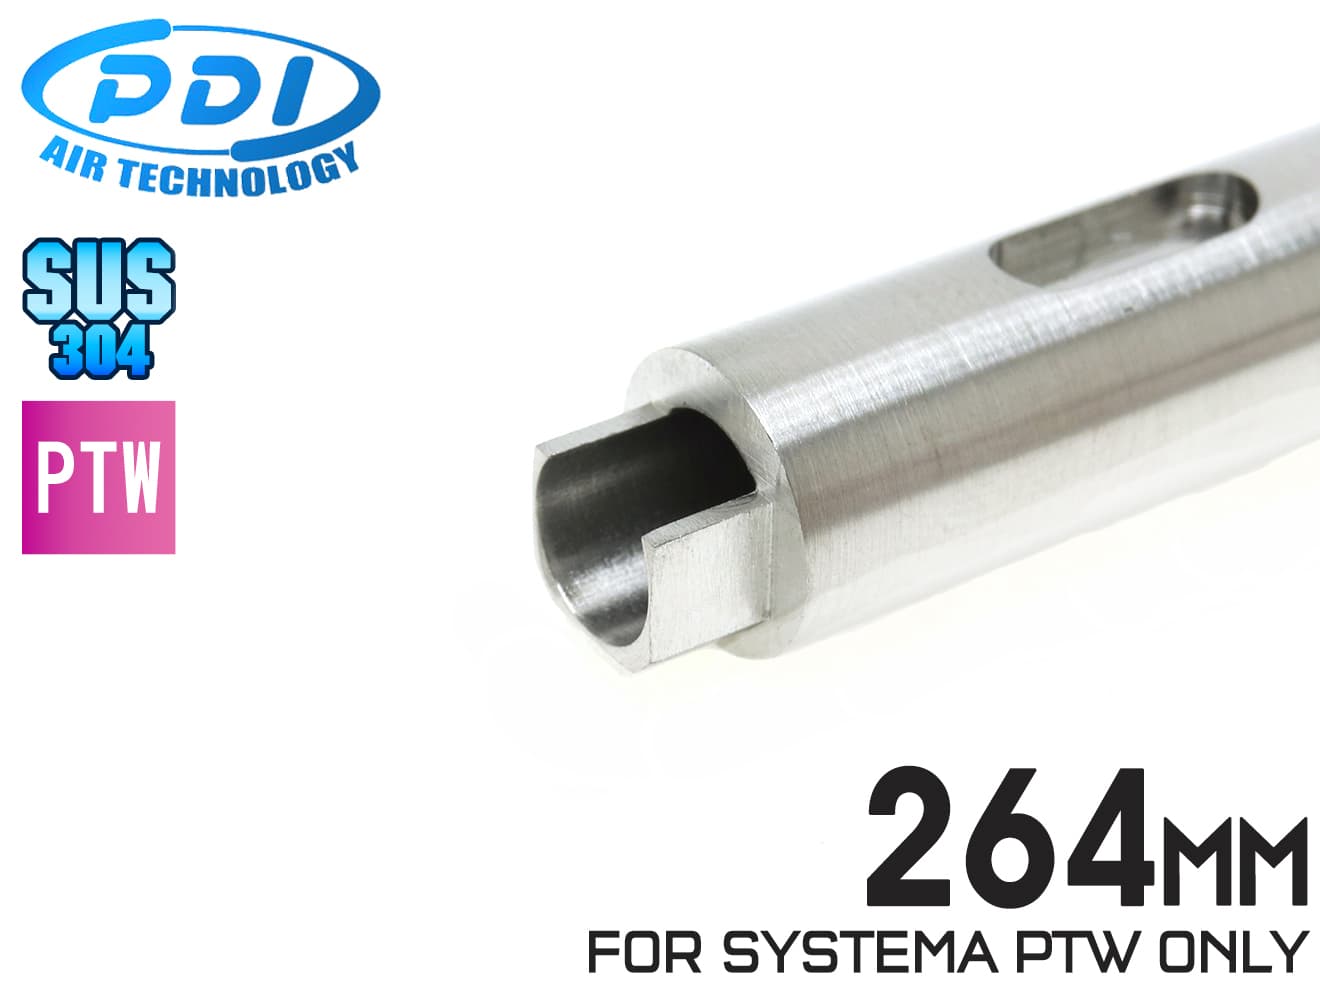 PDI 04シリーズ SYSTEMA PTW 超精密ステンレスインナーバレル (6.04±0.002) 264mm◆システマ/送料無料/外径10mm